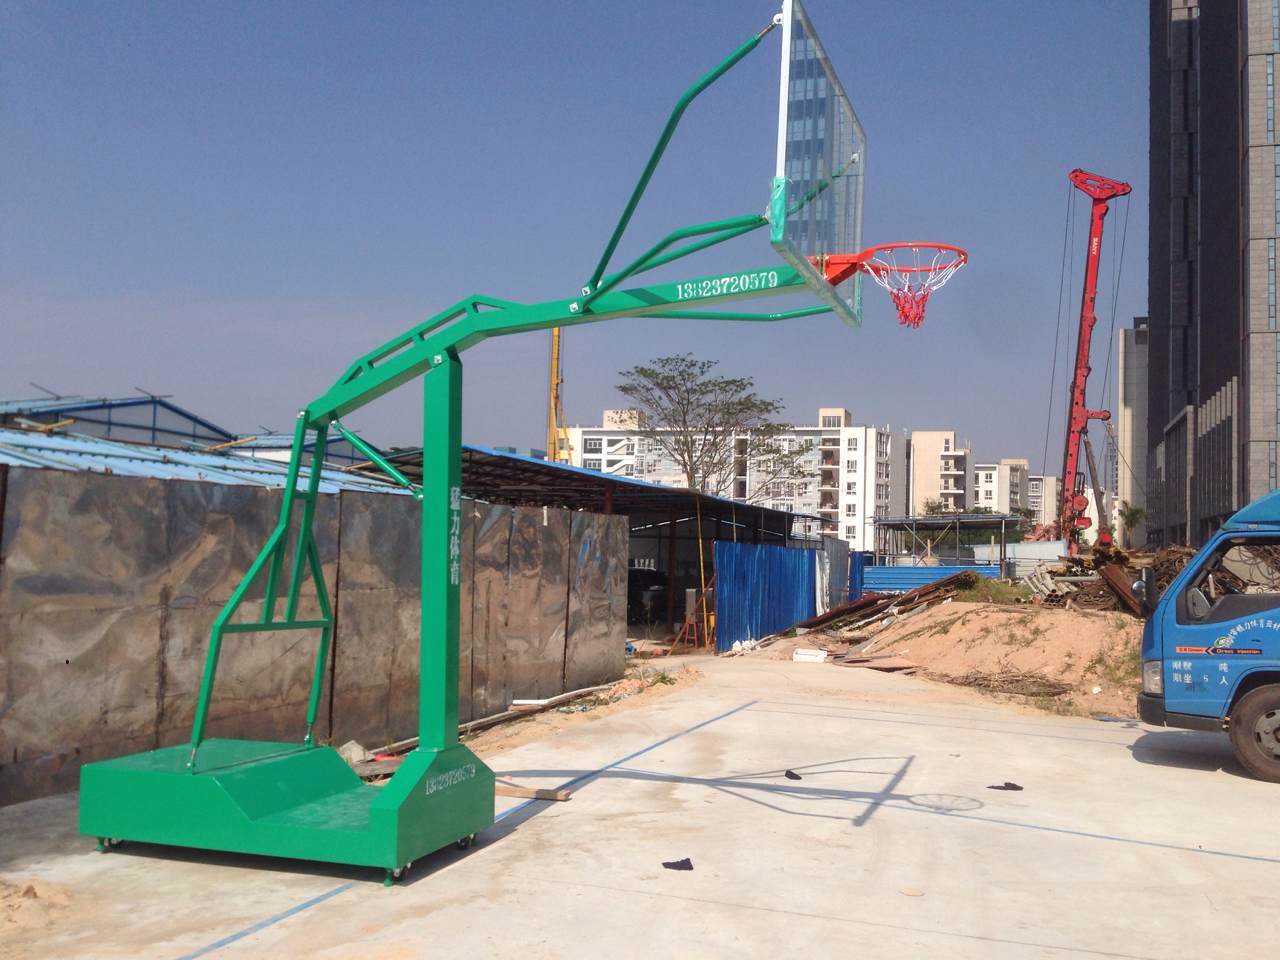 移动式篮球架海燕式篮球架成人篮球架深圳篮球架厂家 篮球架、球板、球框、球网1